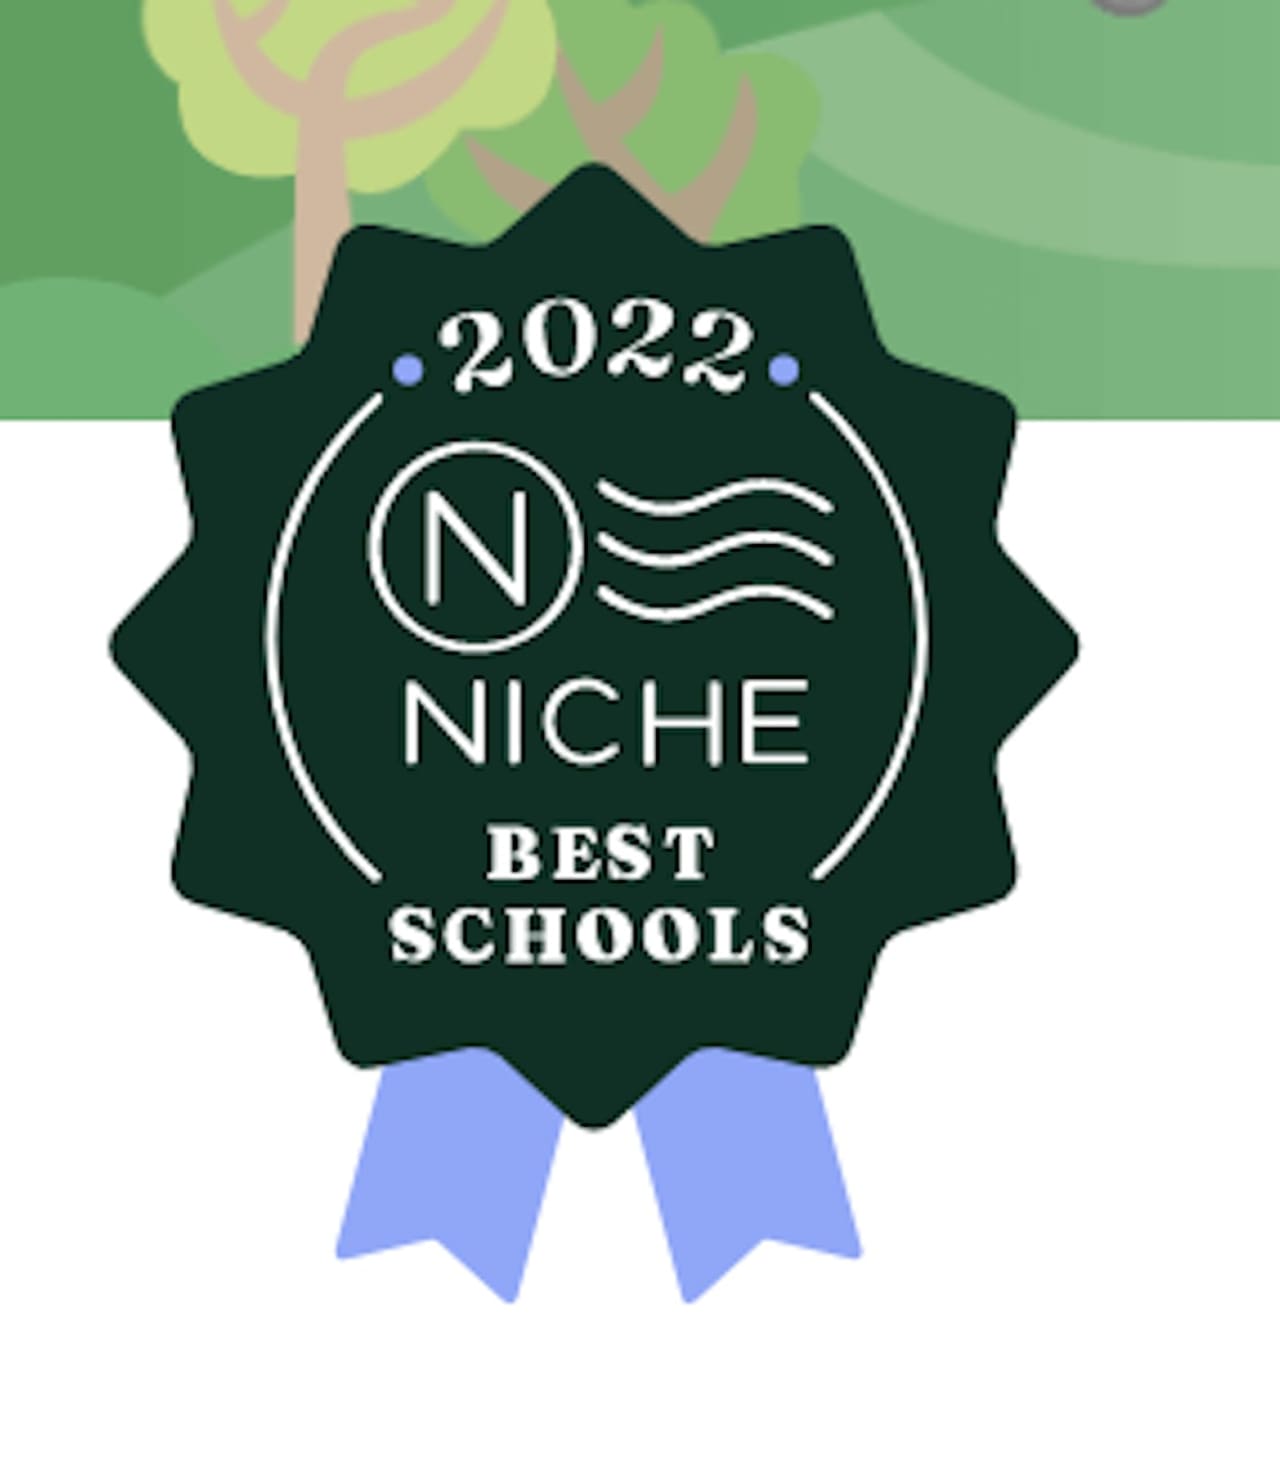 Niche Best Schools 2022